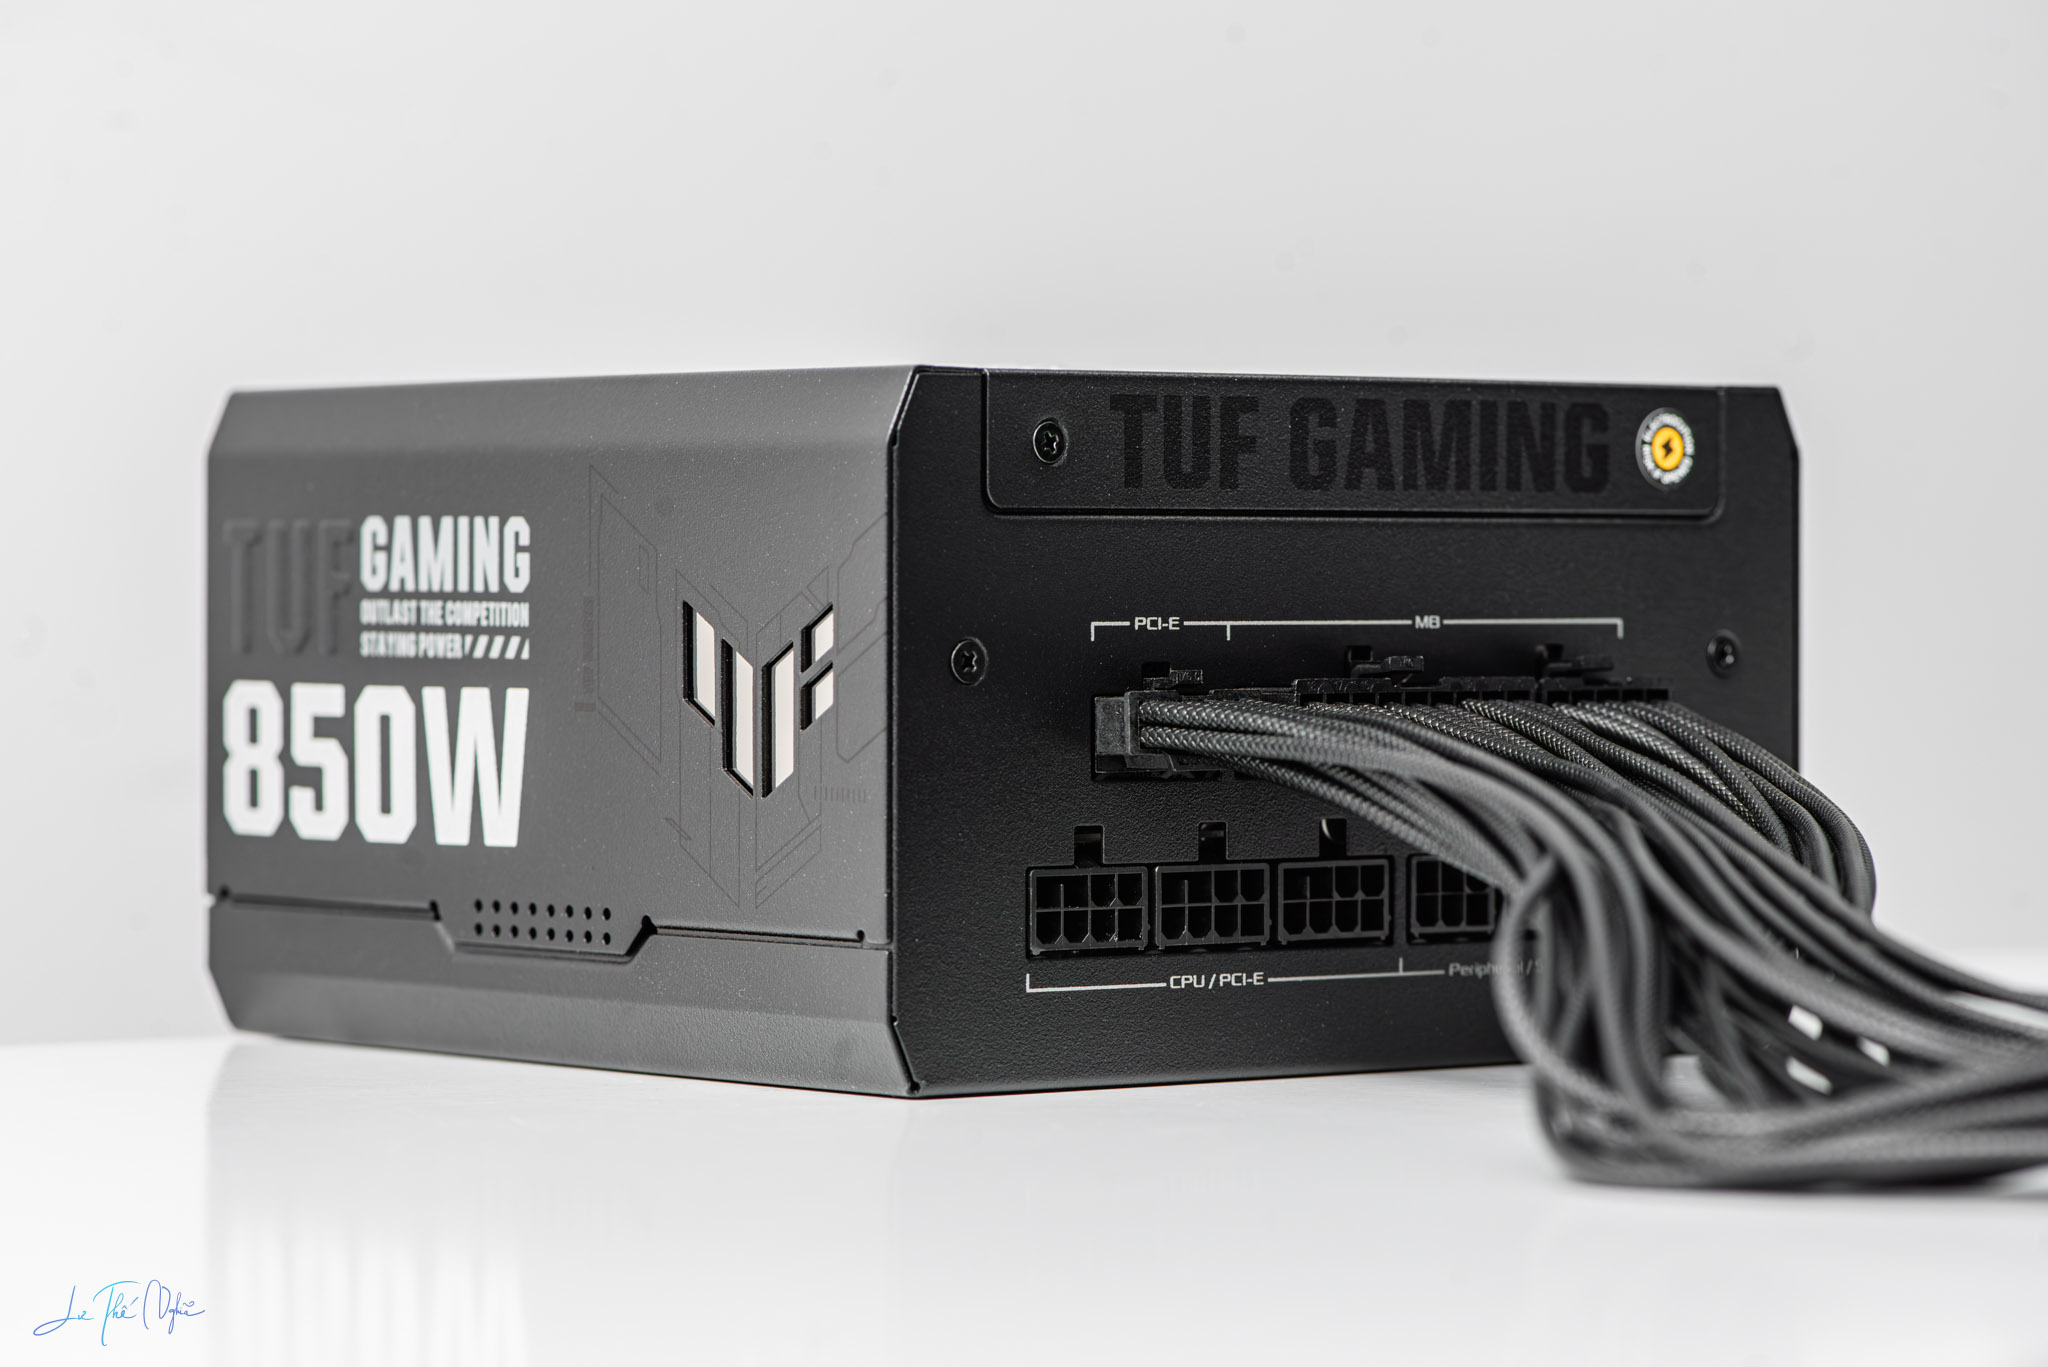 Trên tay ASUS TUF Gaming 850W Gold - Bộ nguồn ATX 3.0 chất lượng, cáp modular đẹp